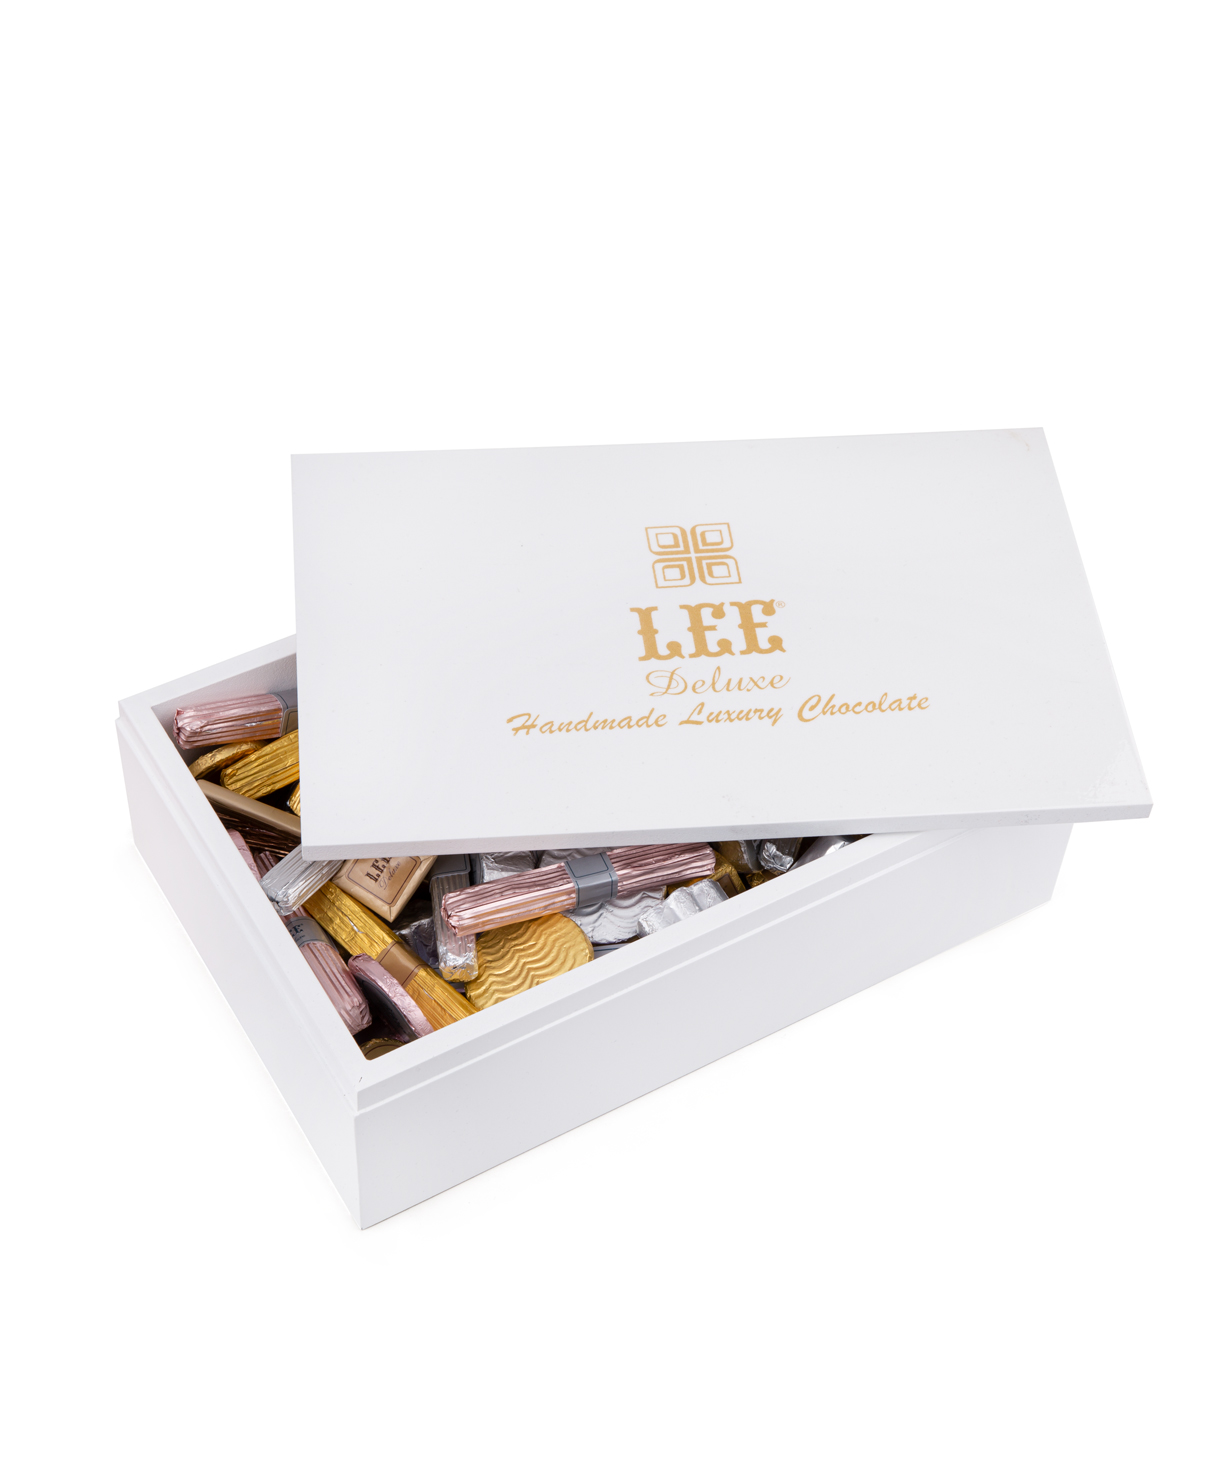 Հավաքածու «Lee Deluxe» փայտե տուփով, սպիտակ